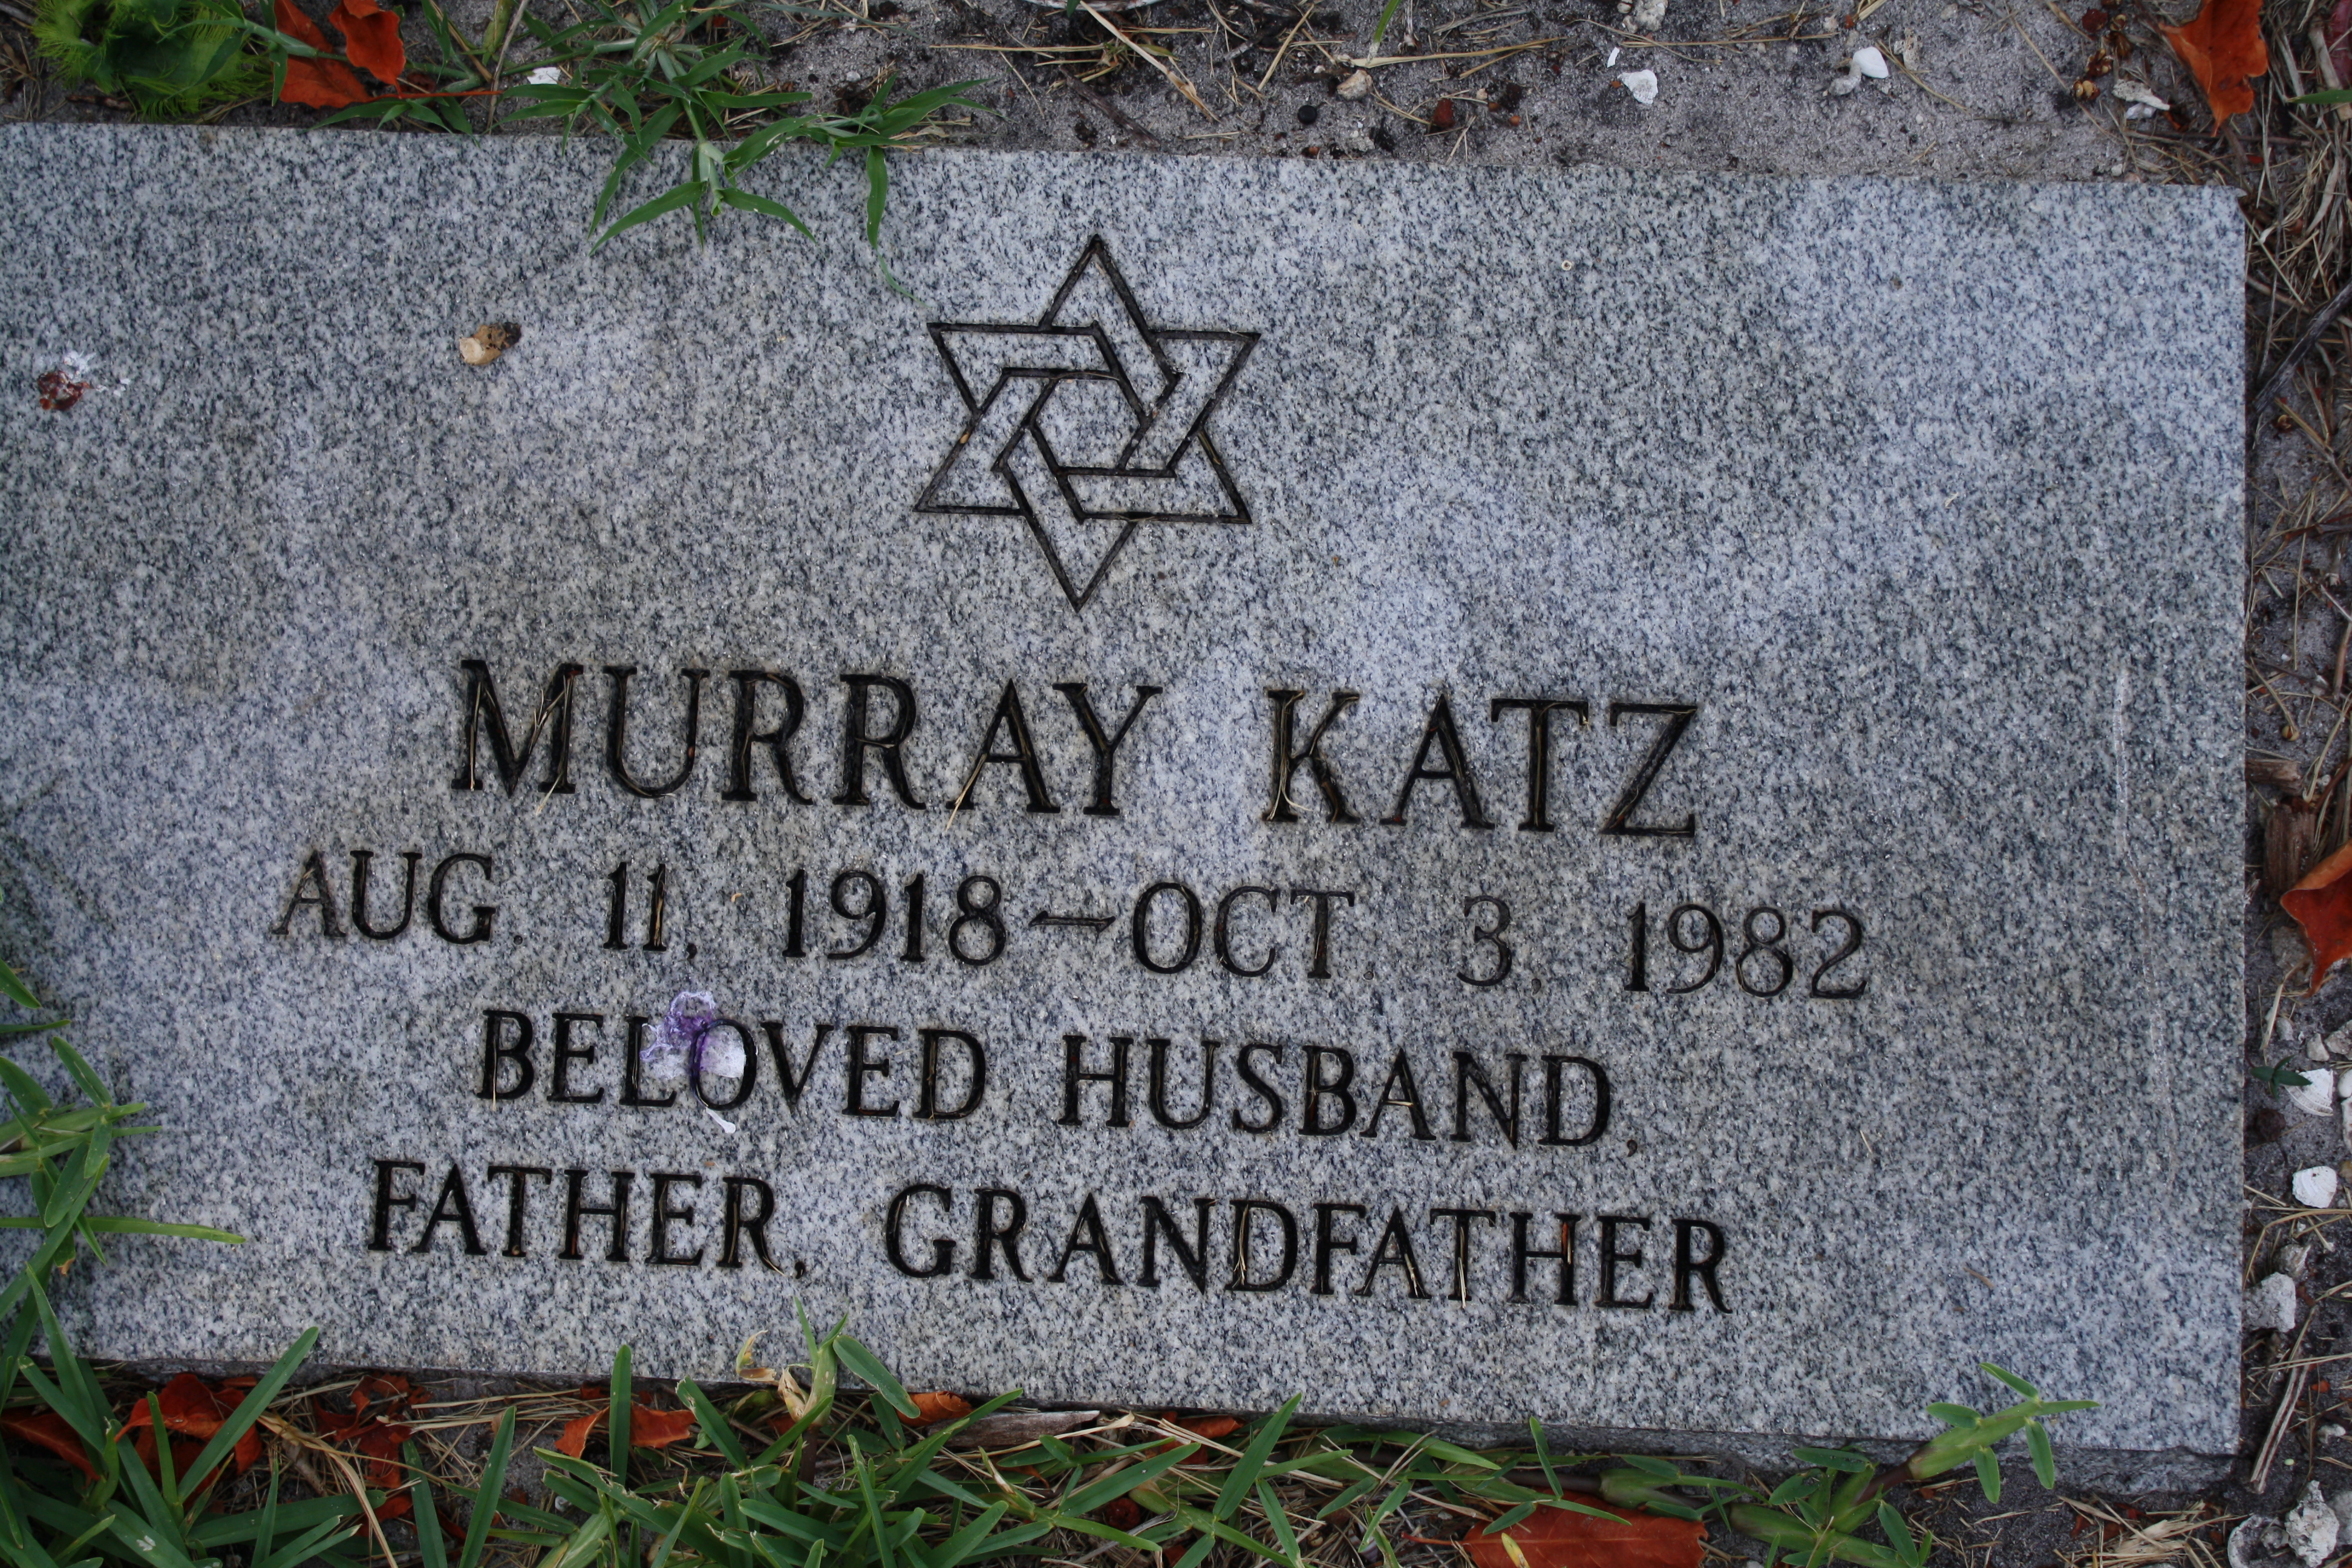 Murray Katz